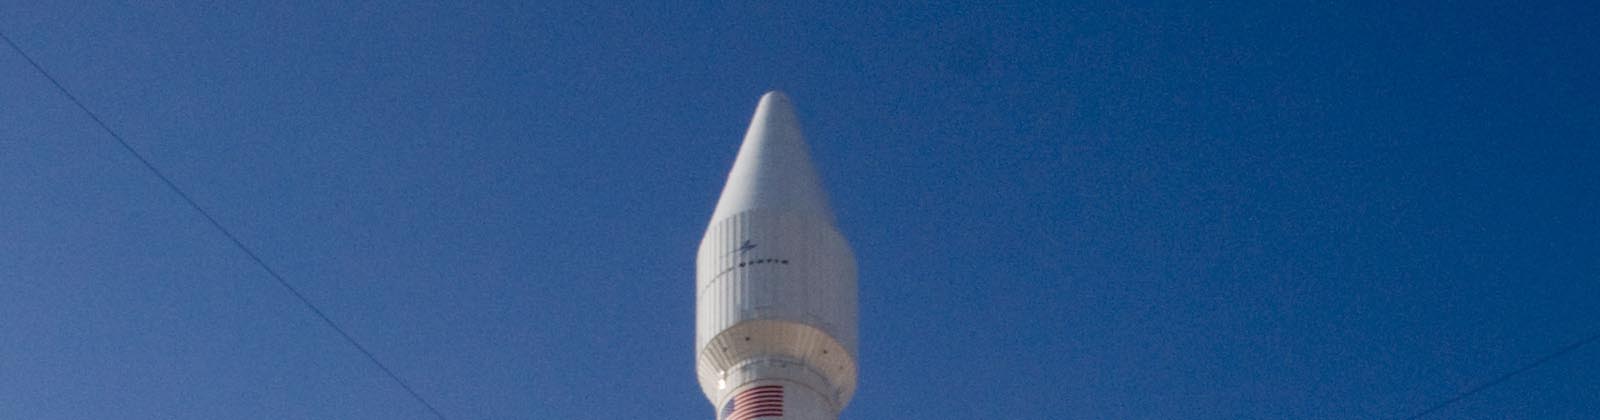 Lancement Atlas V avec le satellite PAN